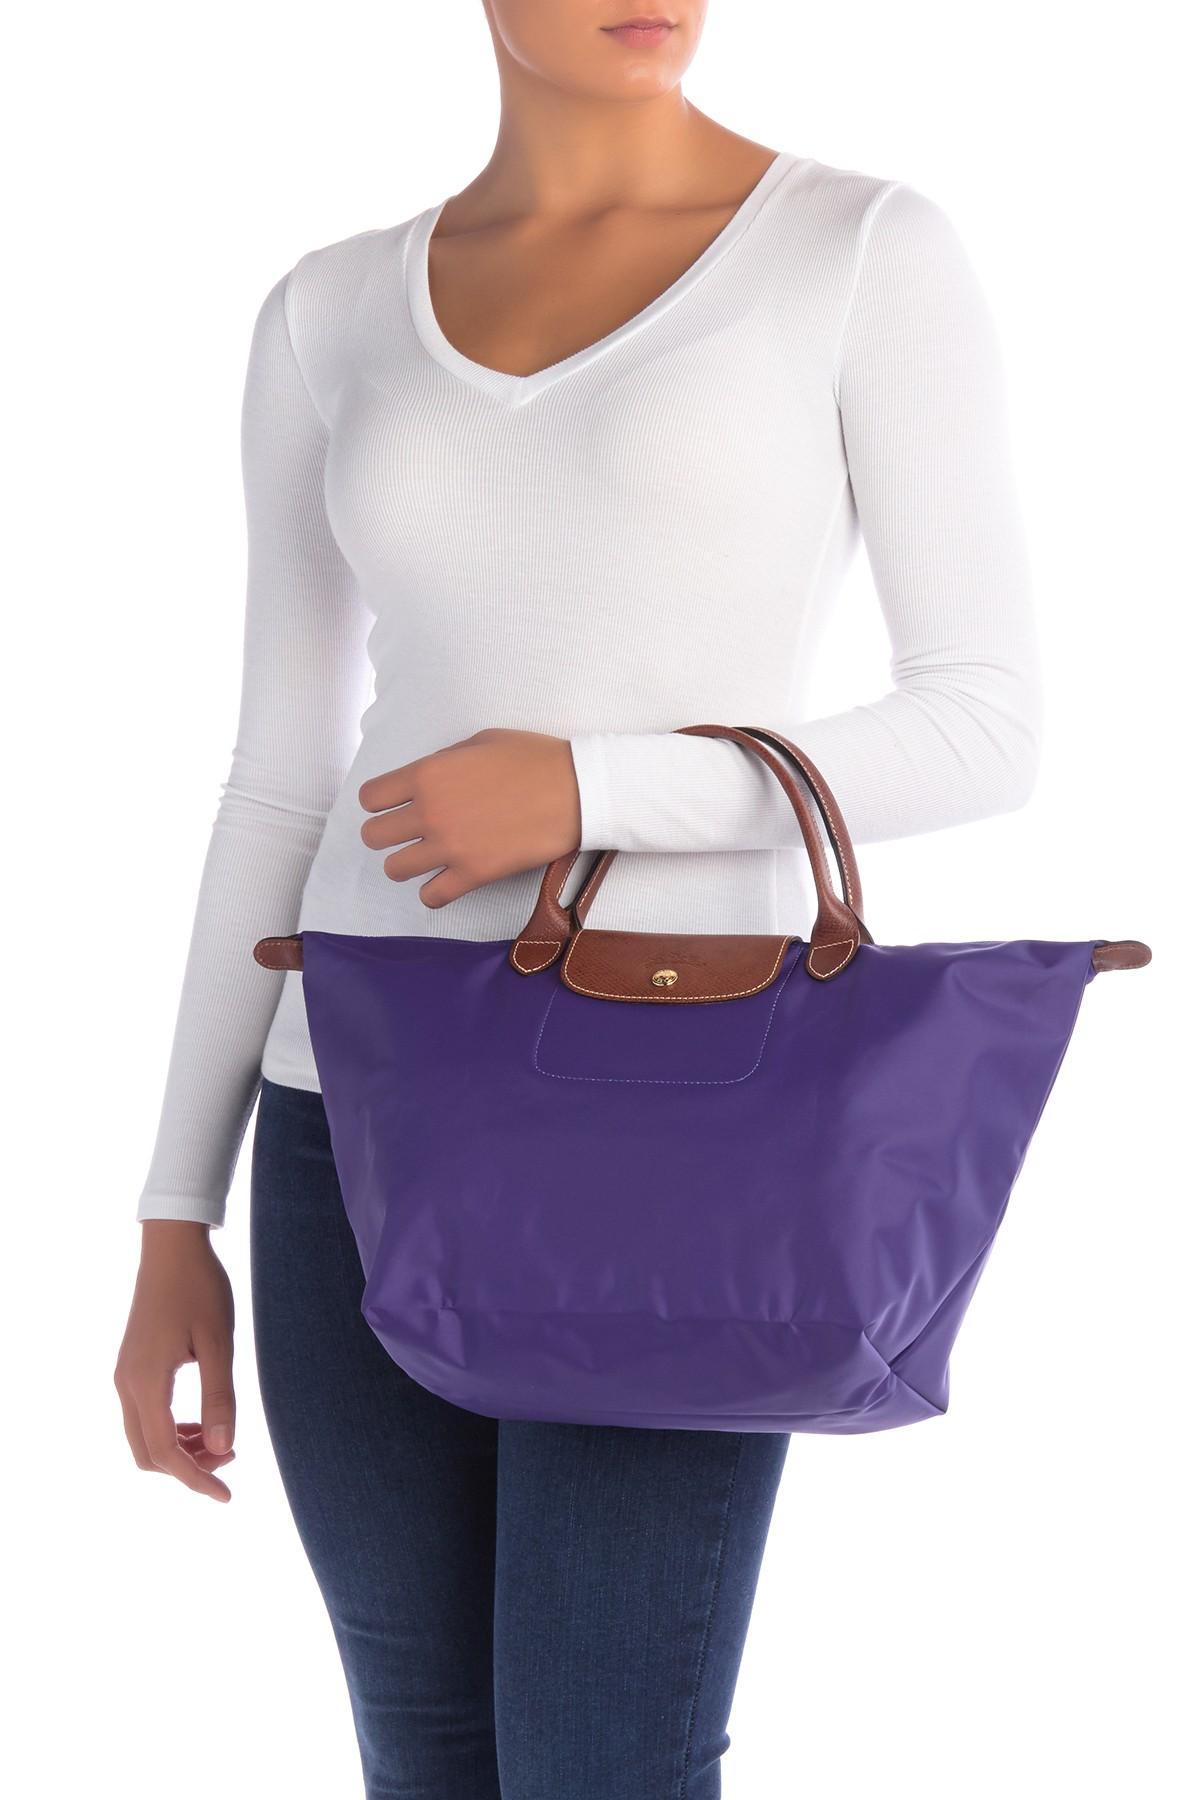 Other  Longchamp Purple Pliage Cuir Amethyst Leather Key Fob Bag